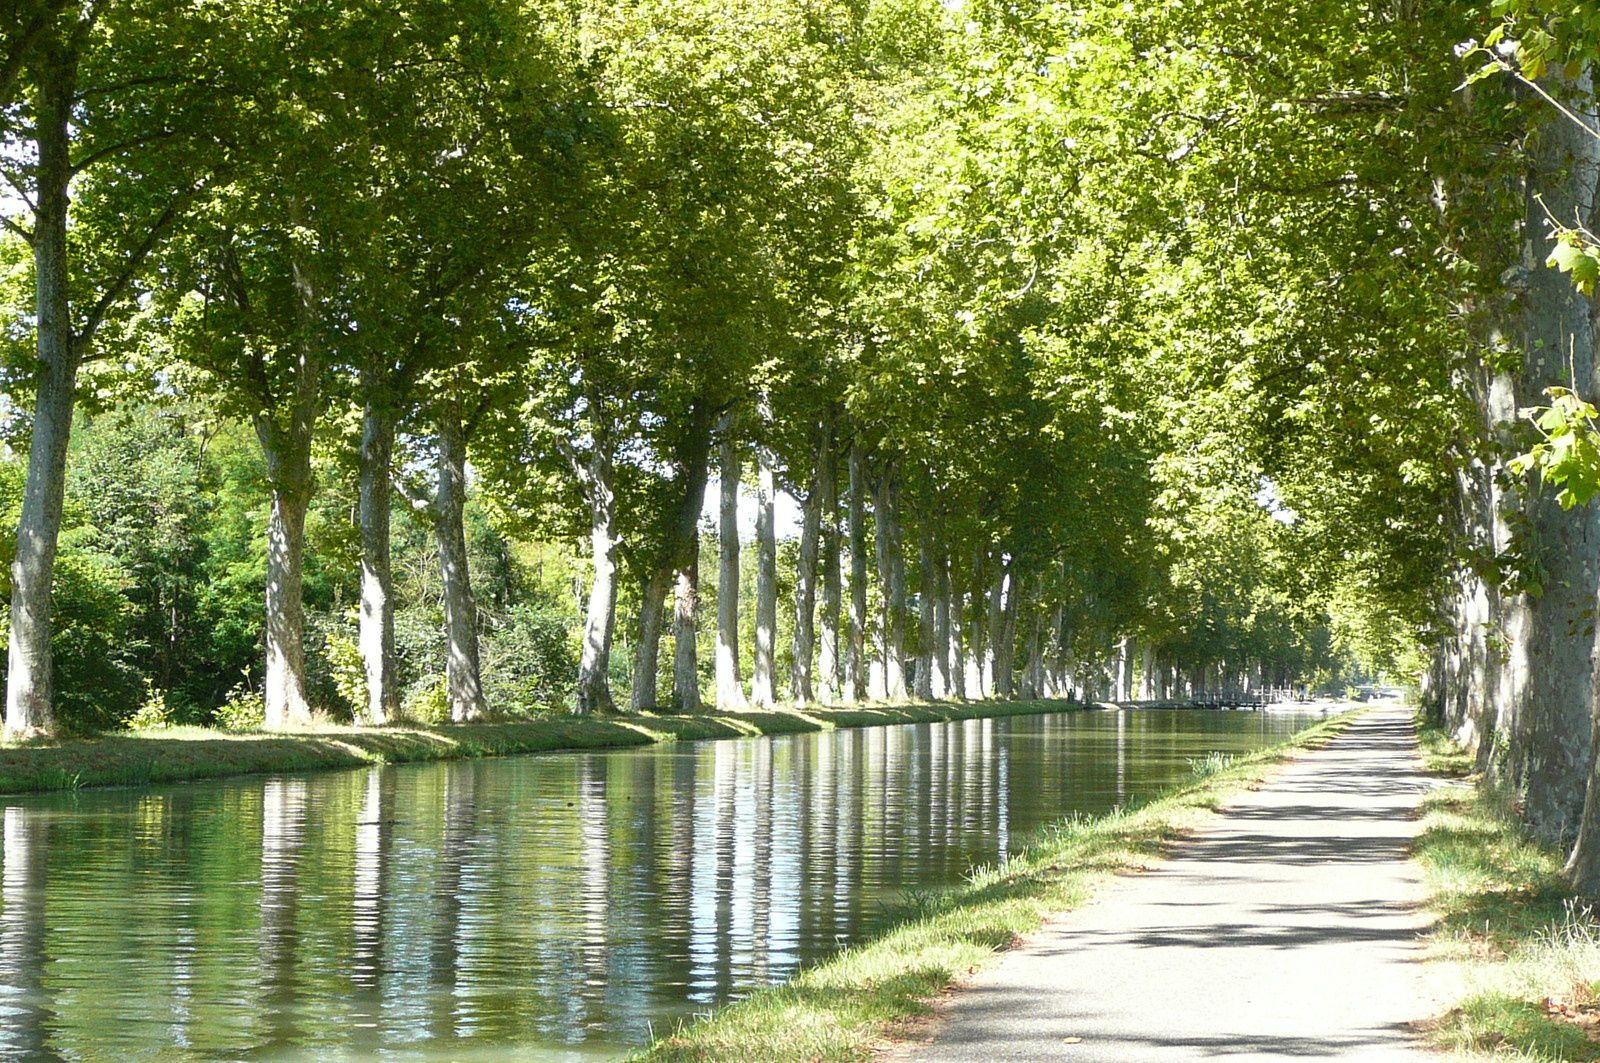 Montech : Un canal extraordinaire, frais et reposant ... surtout quand il fait très chaud !